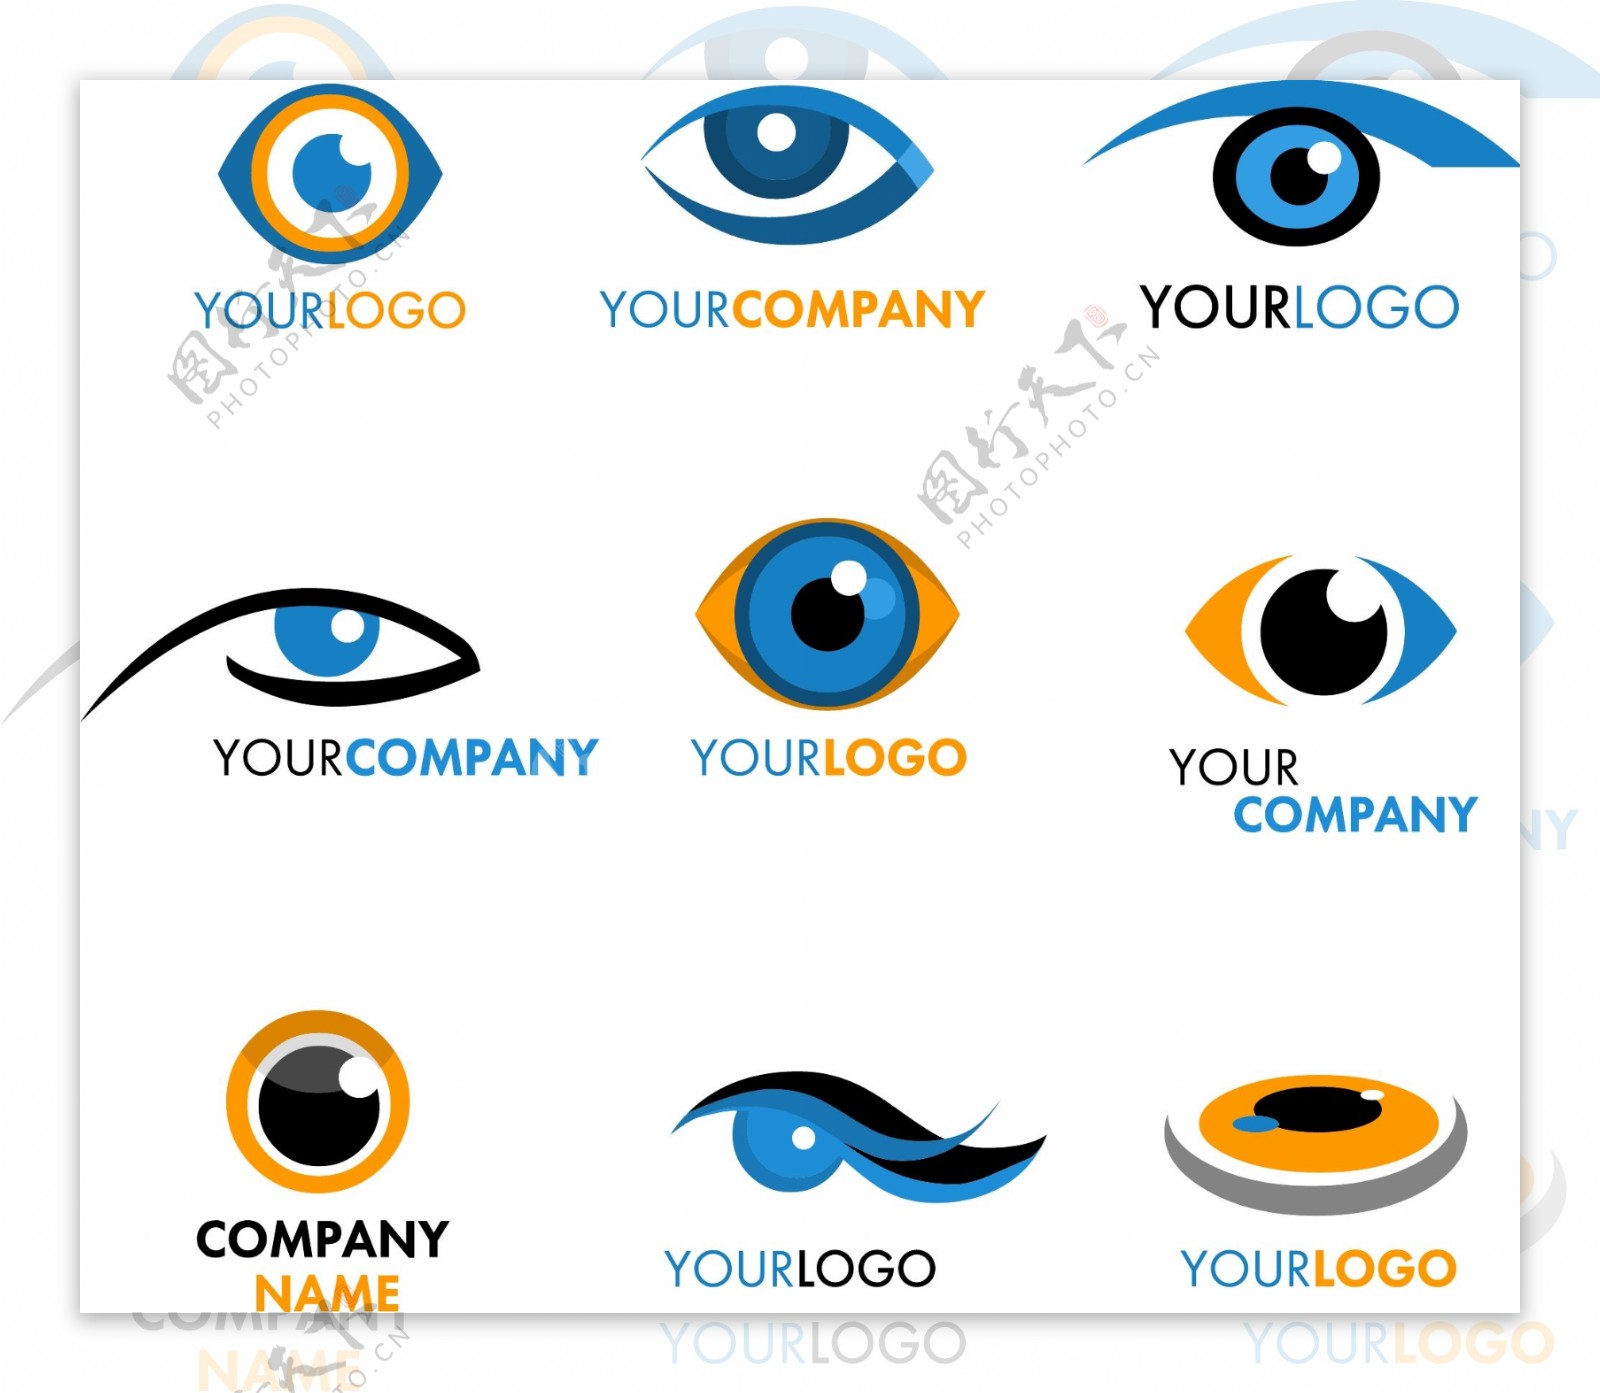 眼睛图形logo矢量素材图片